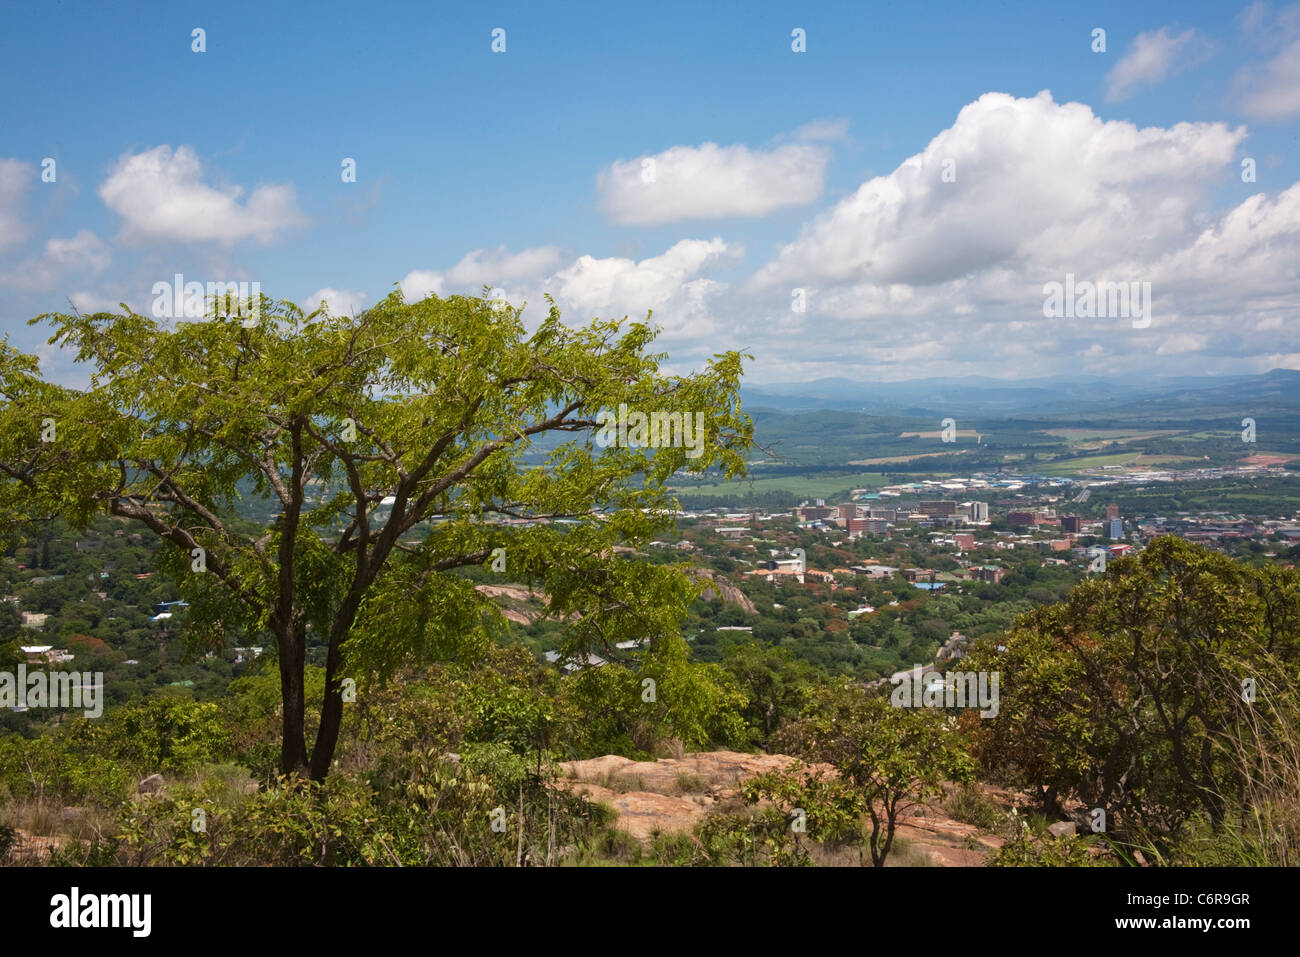 Malerische Aussicht der Stadt Nelspruit mit einem Kiaat Baum im Vordergrund Stockfoto